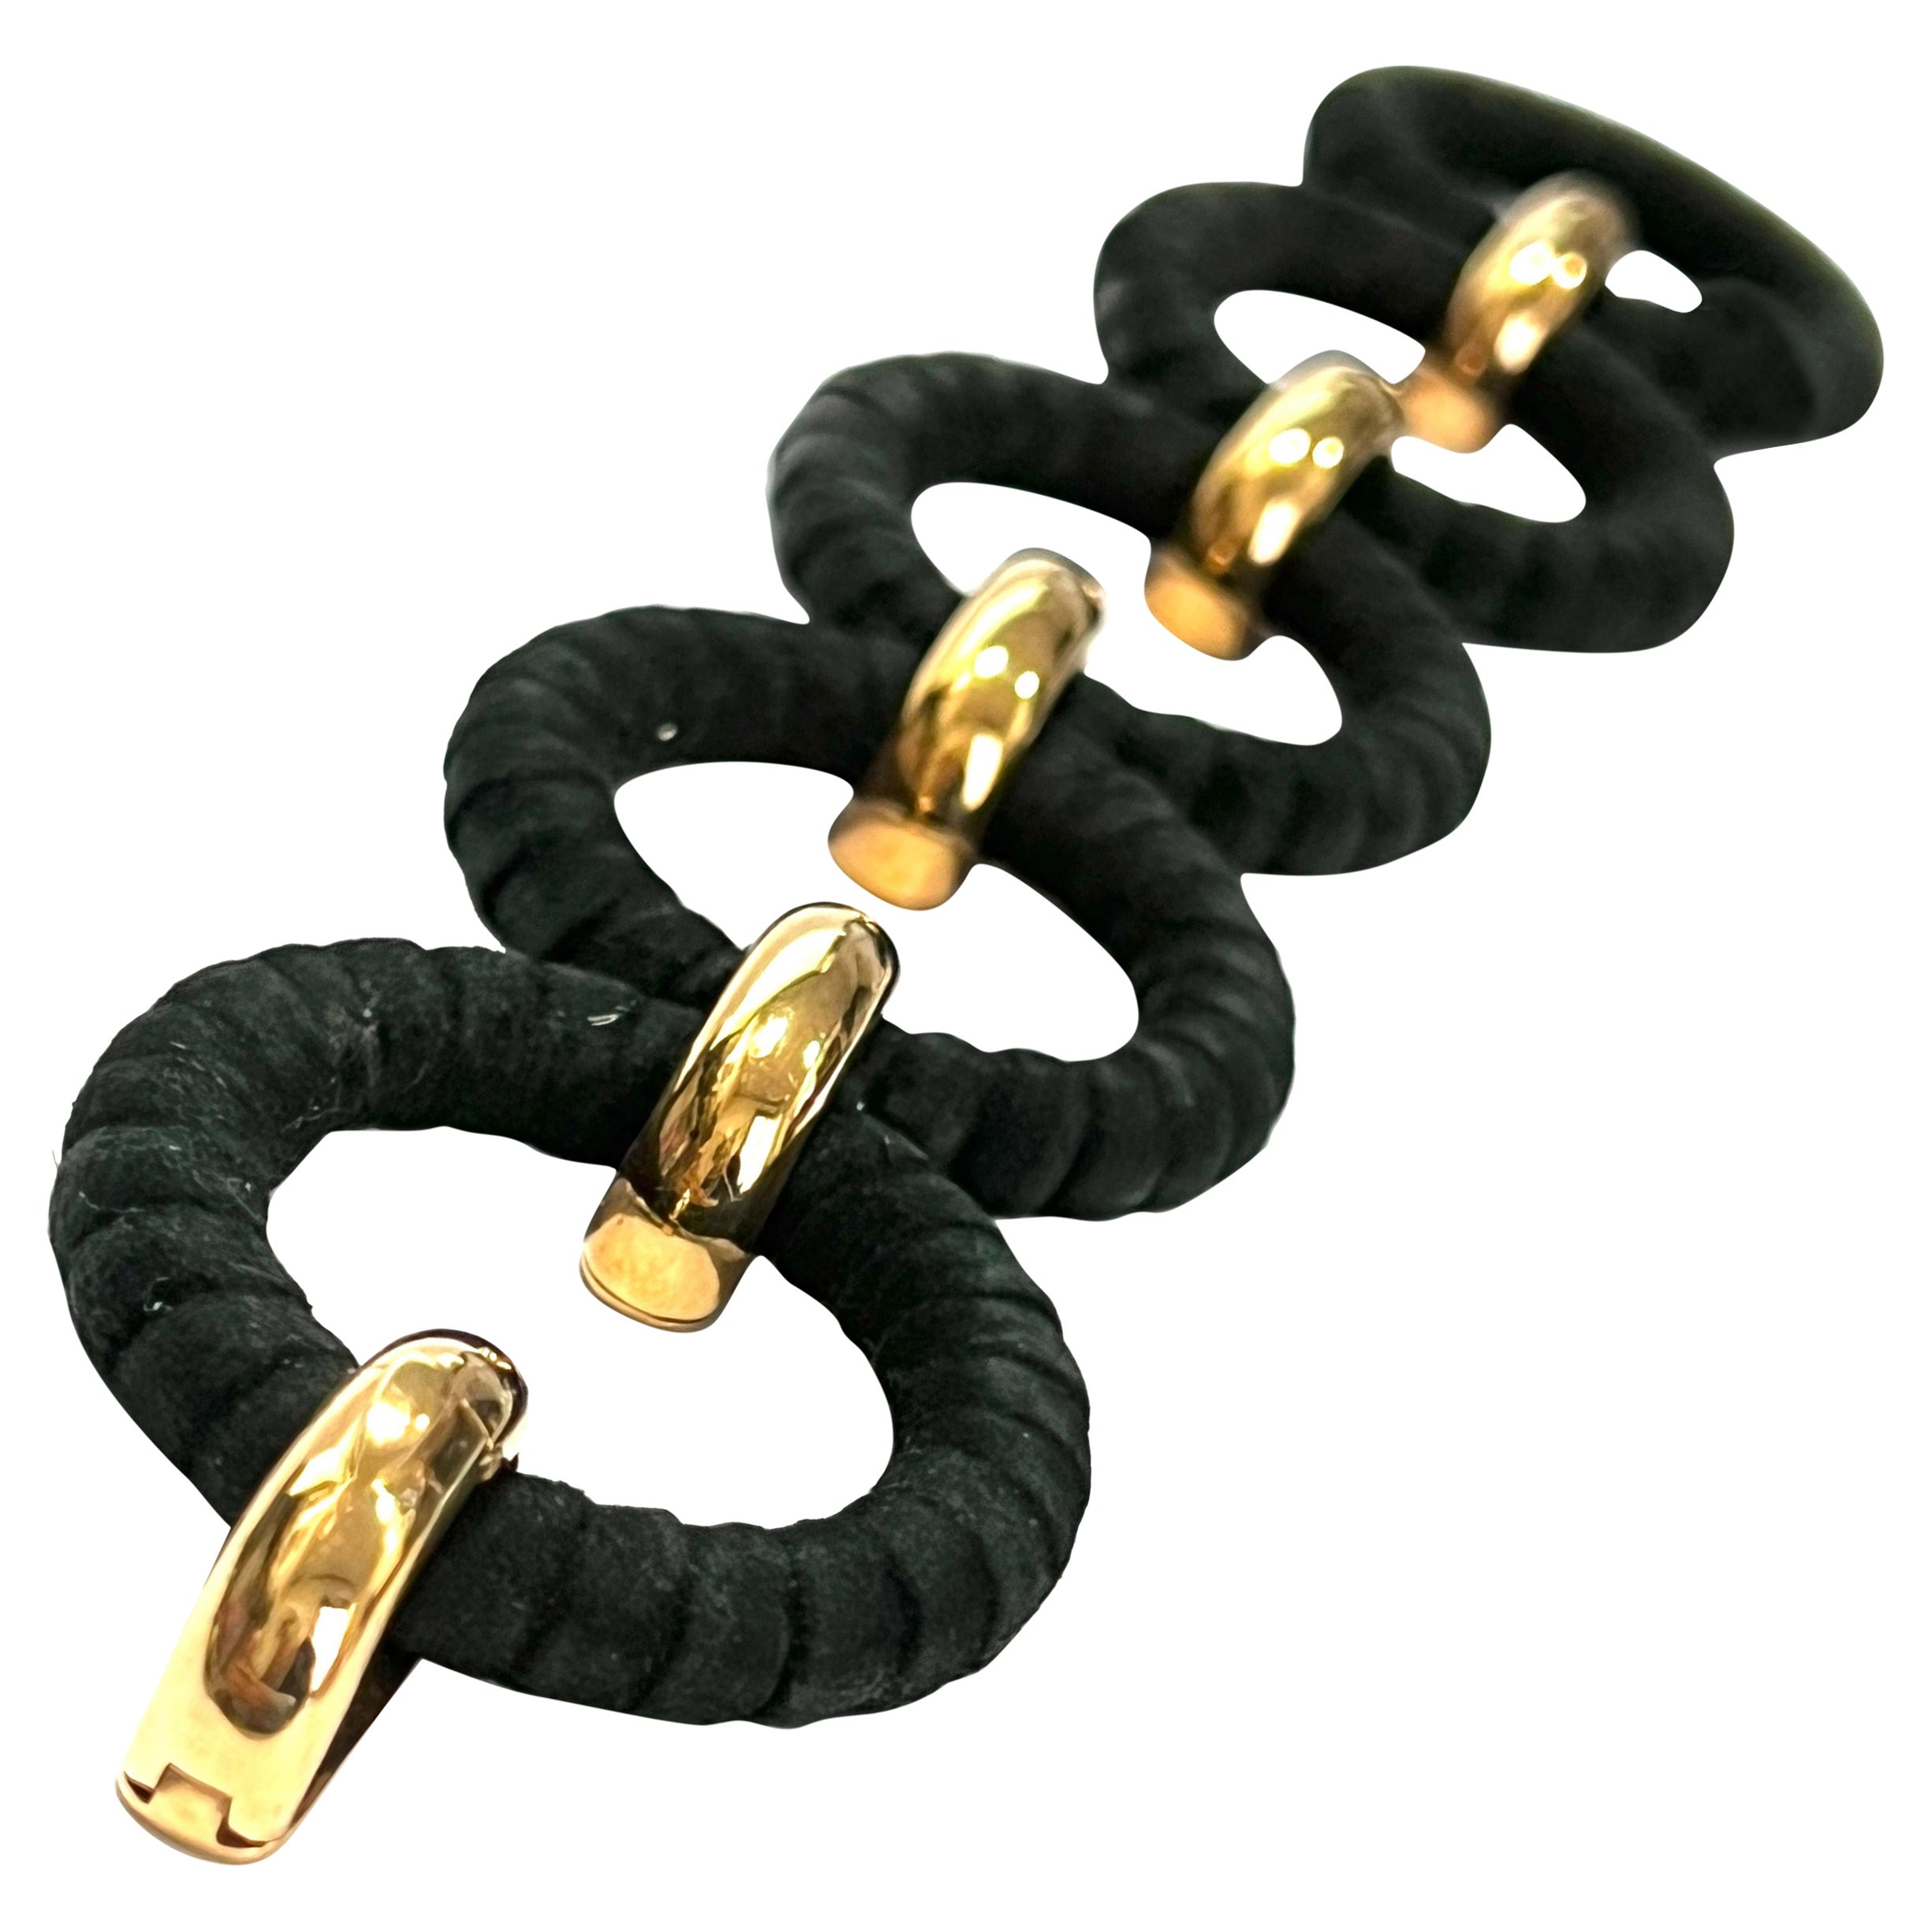 Armband mit runden schwarzen Ledergliedern, kombiniert mit 18k Roségold-Gliedern